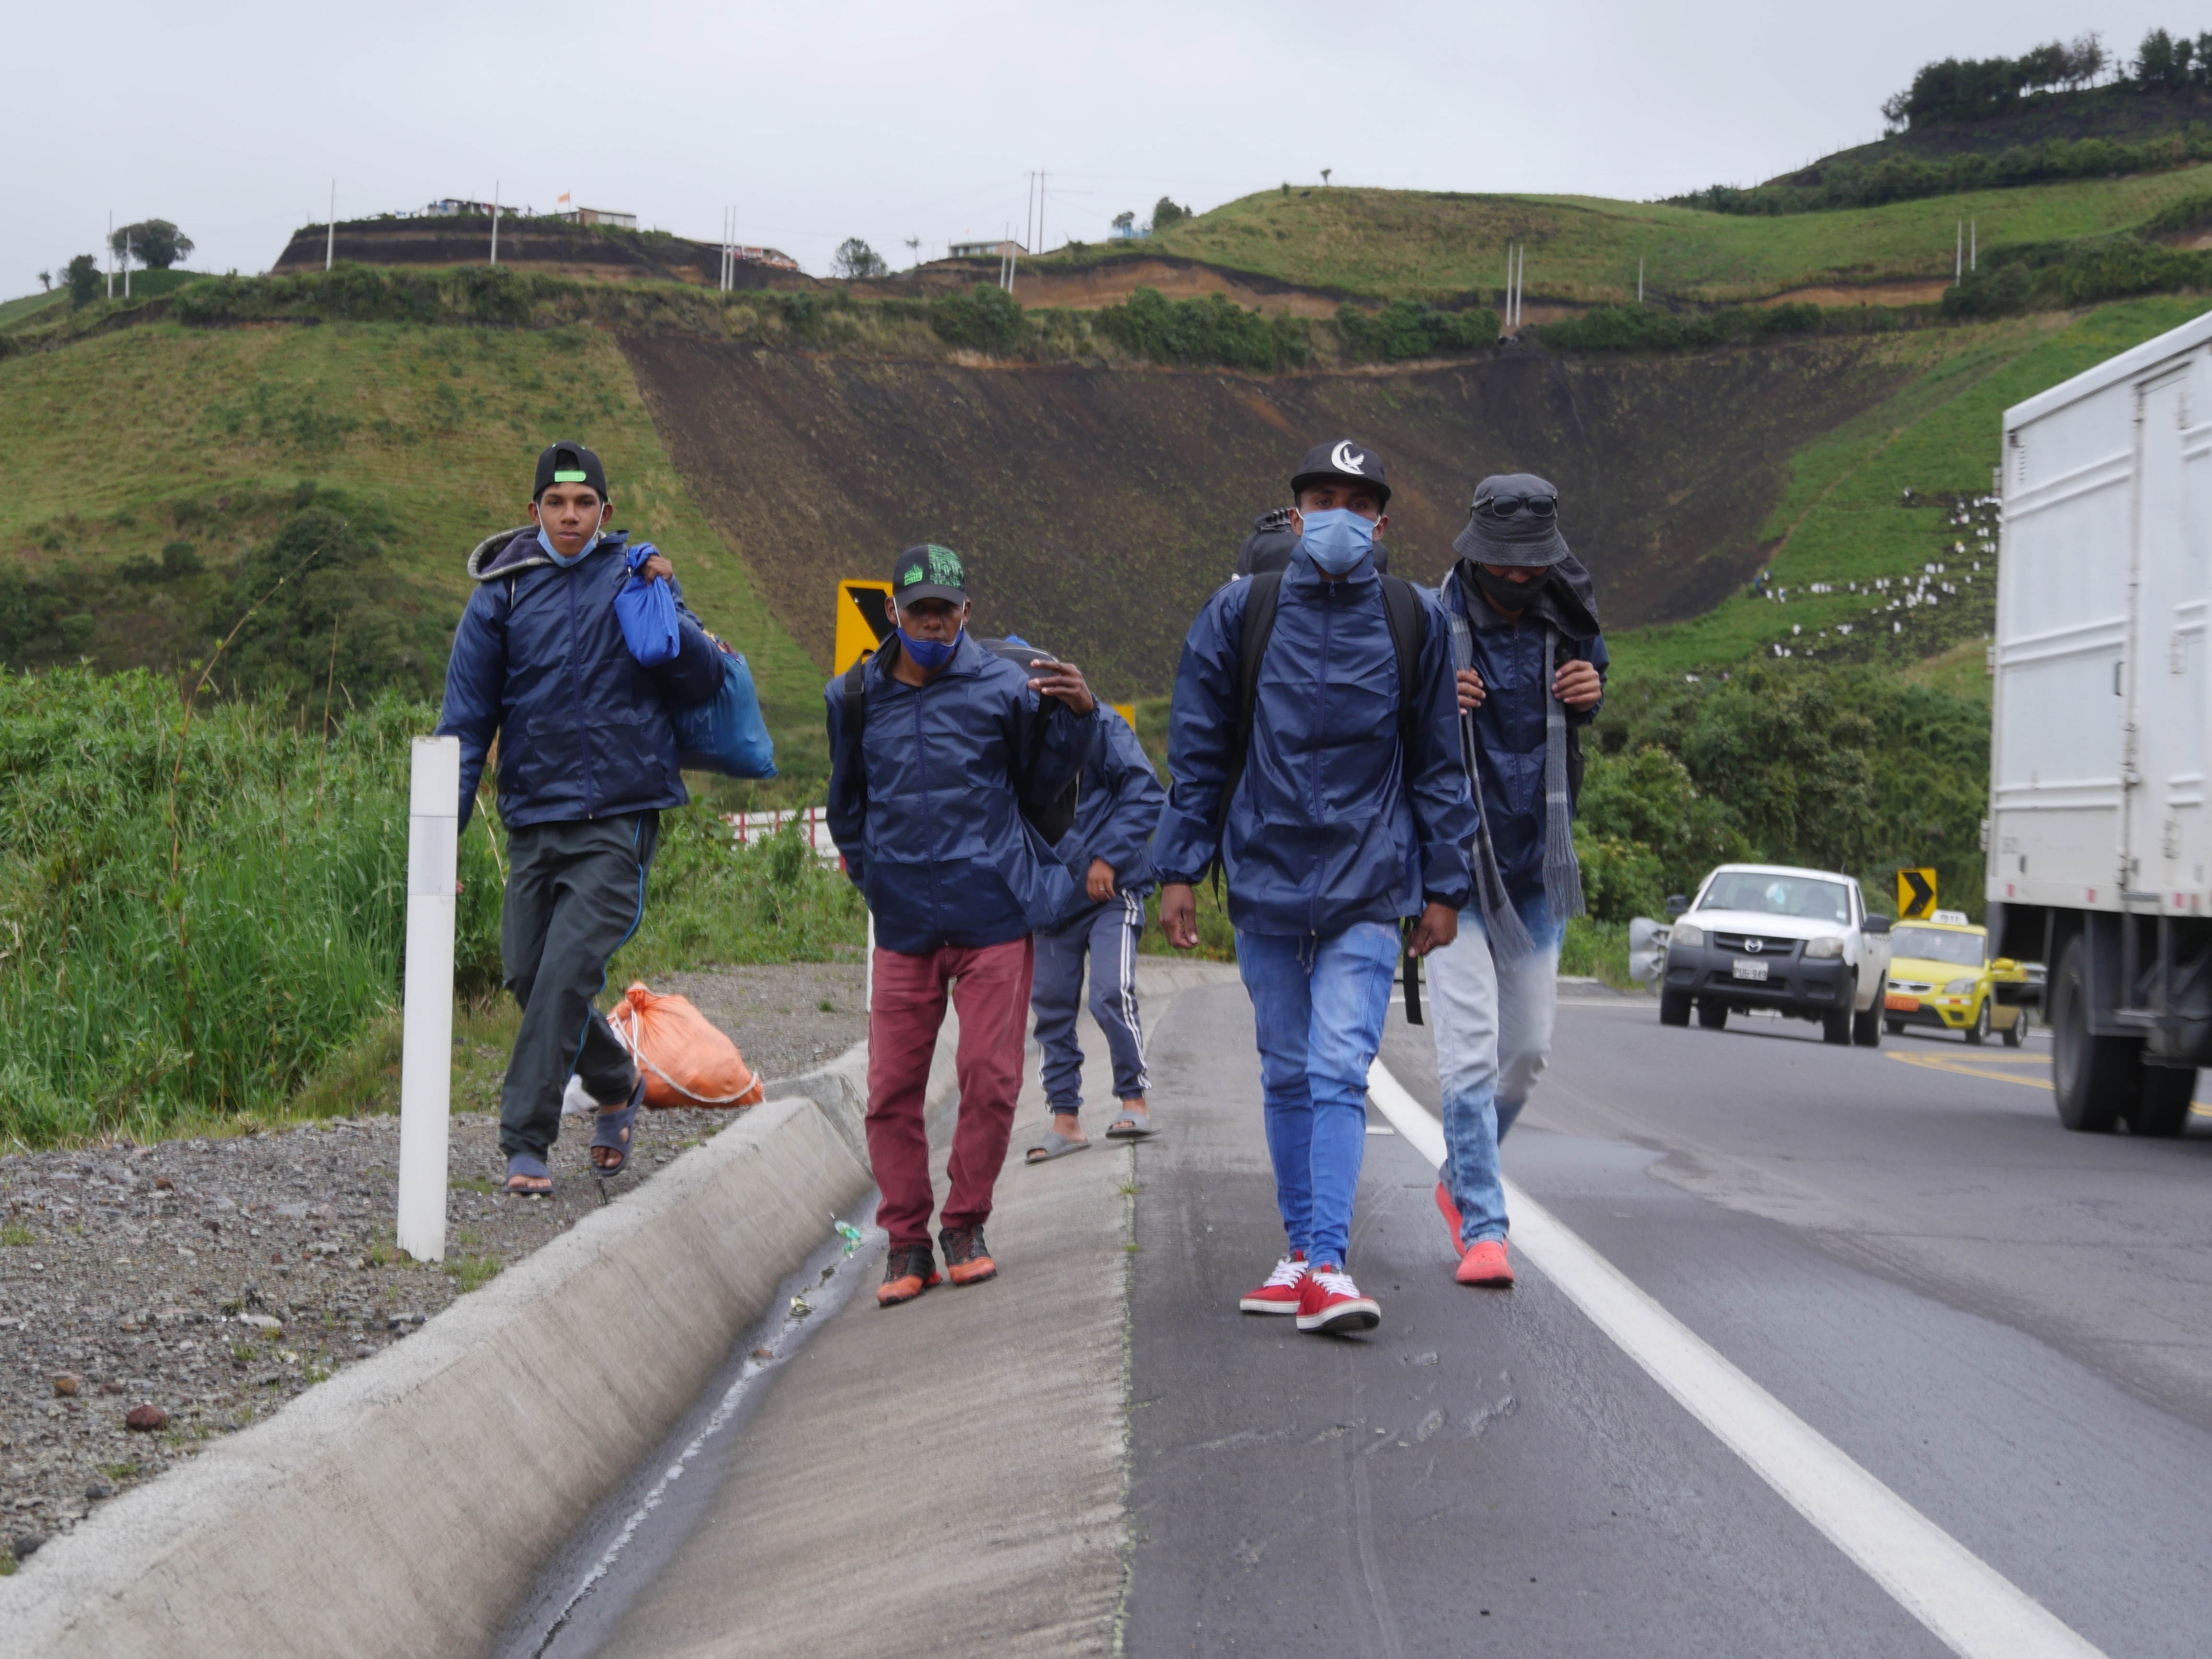 Venezuela: La pobreza hace improbable el retorno de los emigrados